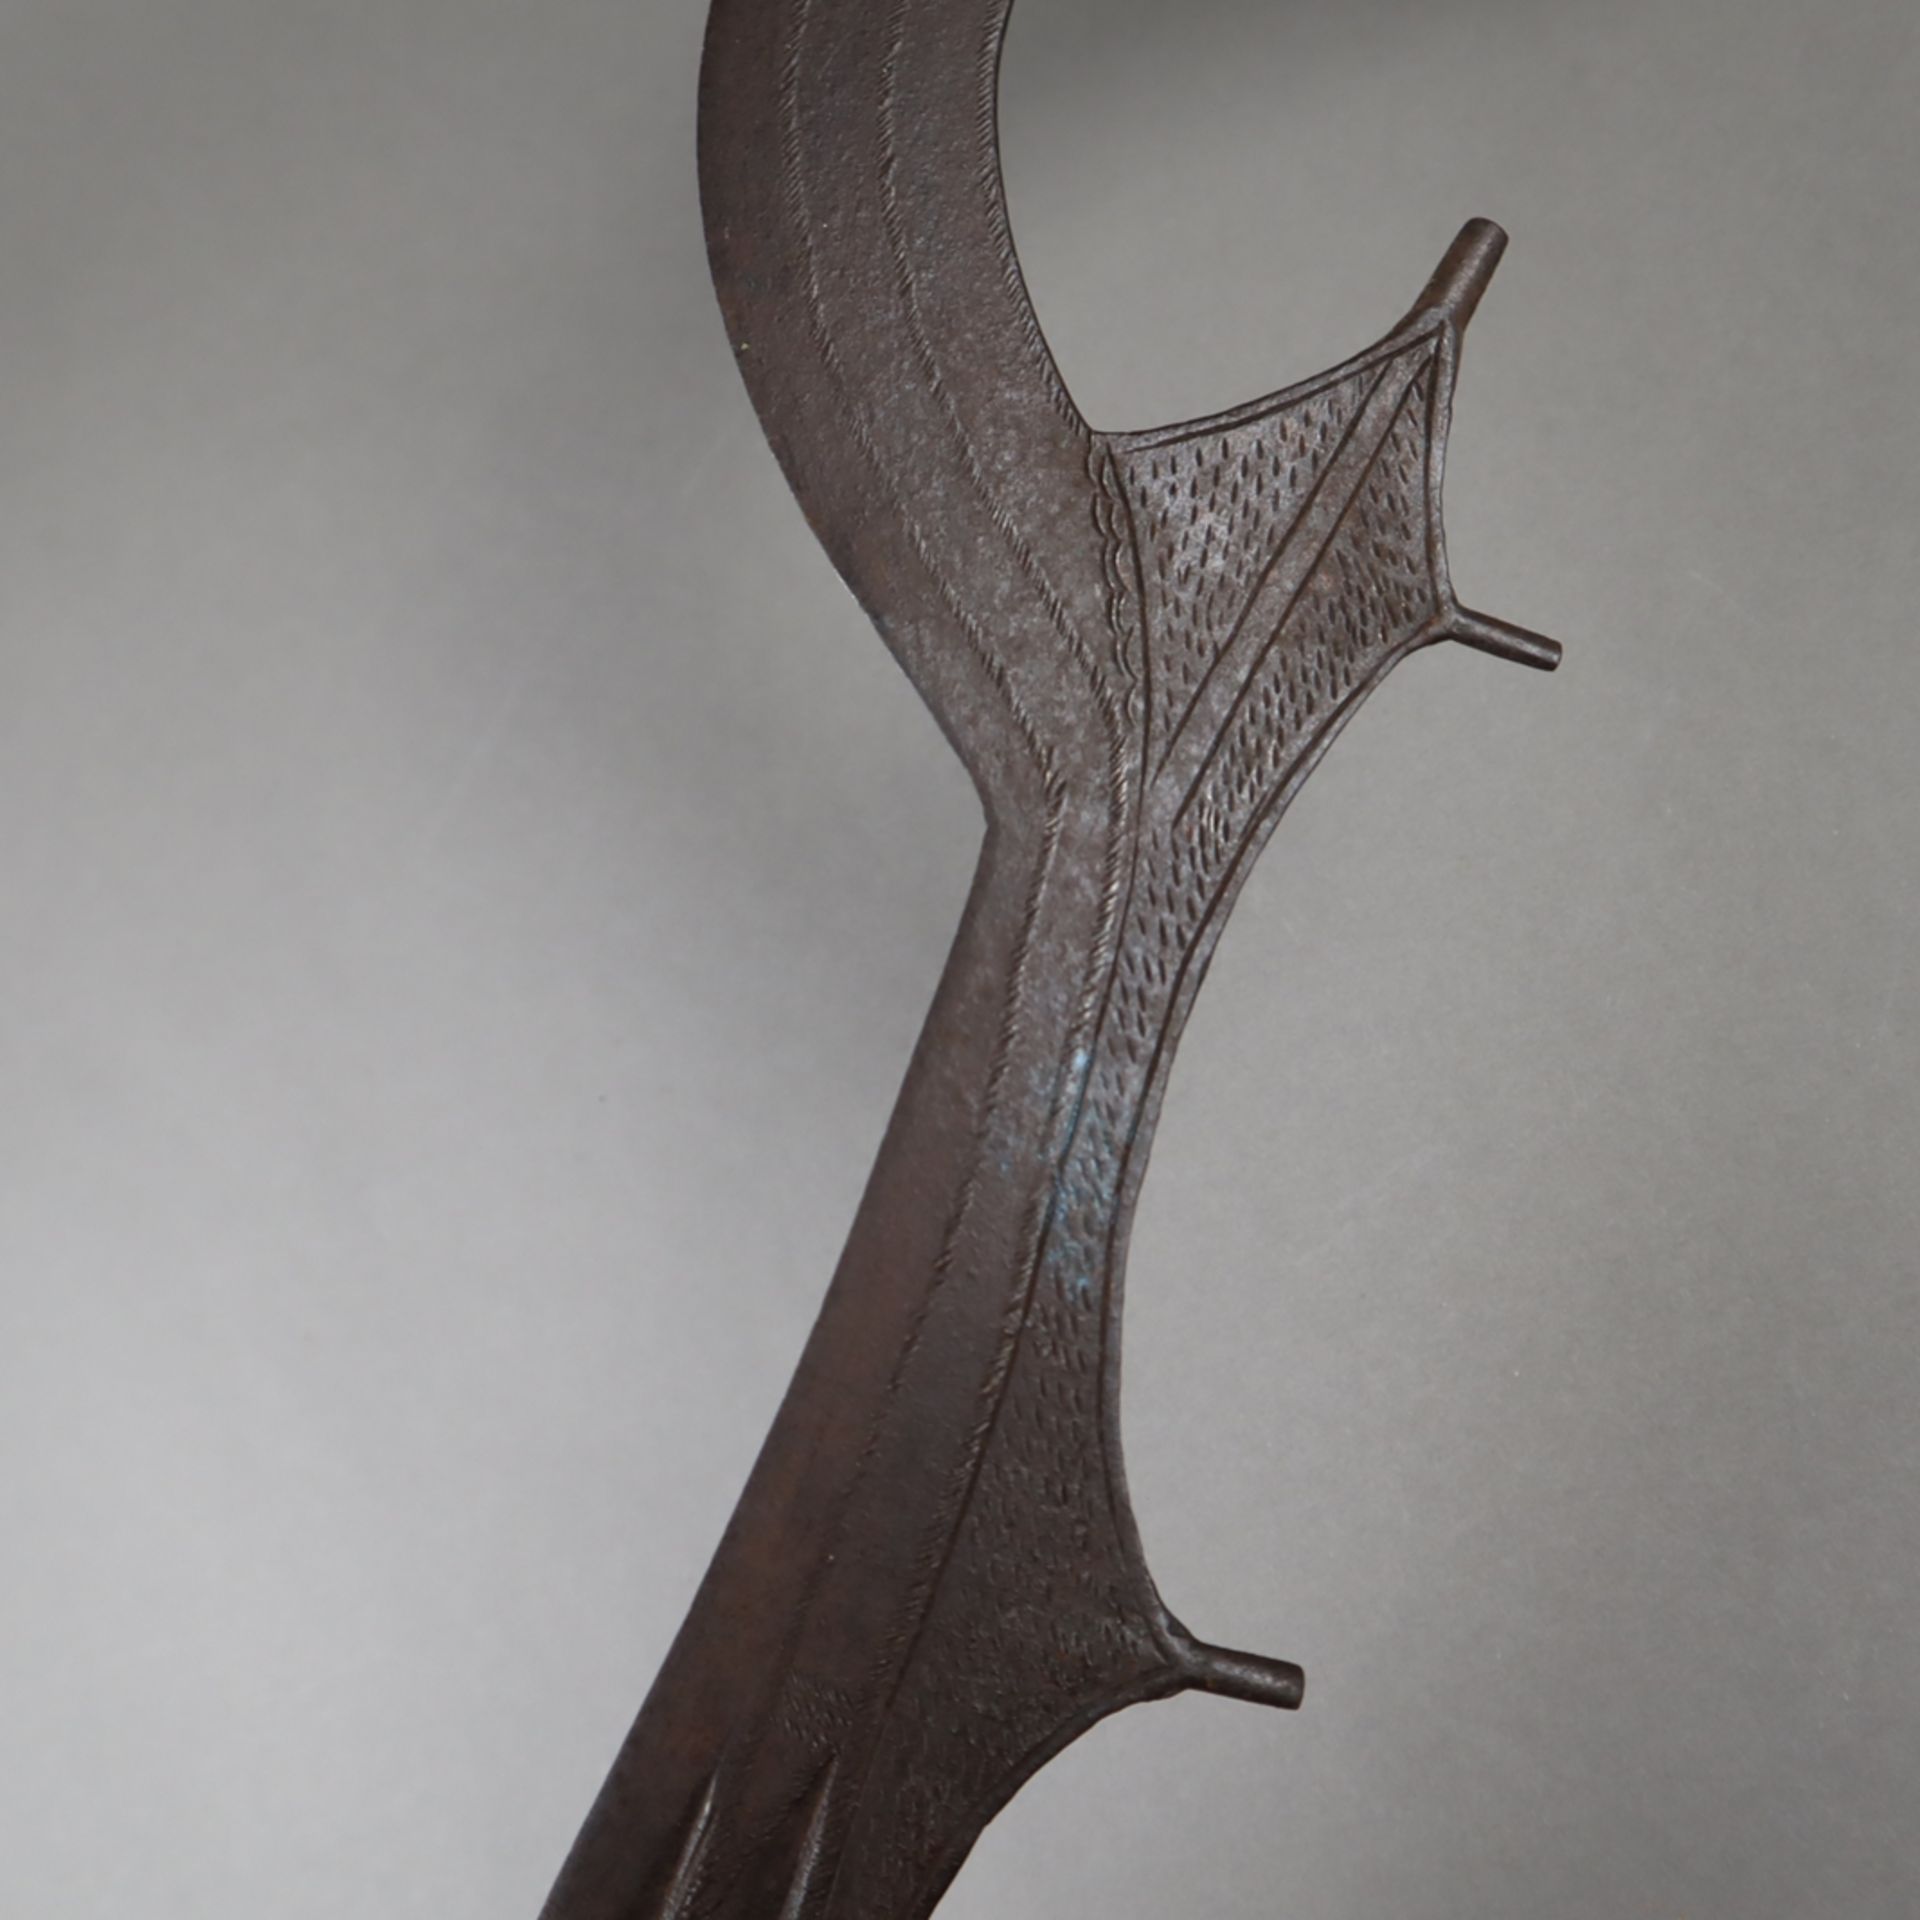 Ngulu - Sichelmesser/Richtschwert der Ngombe, D.R. Kongo, formtypische Eisenkli - Bild 3 aus 5